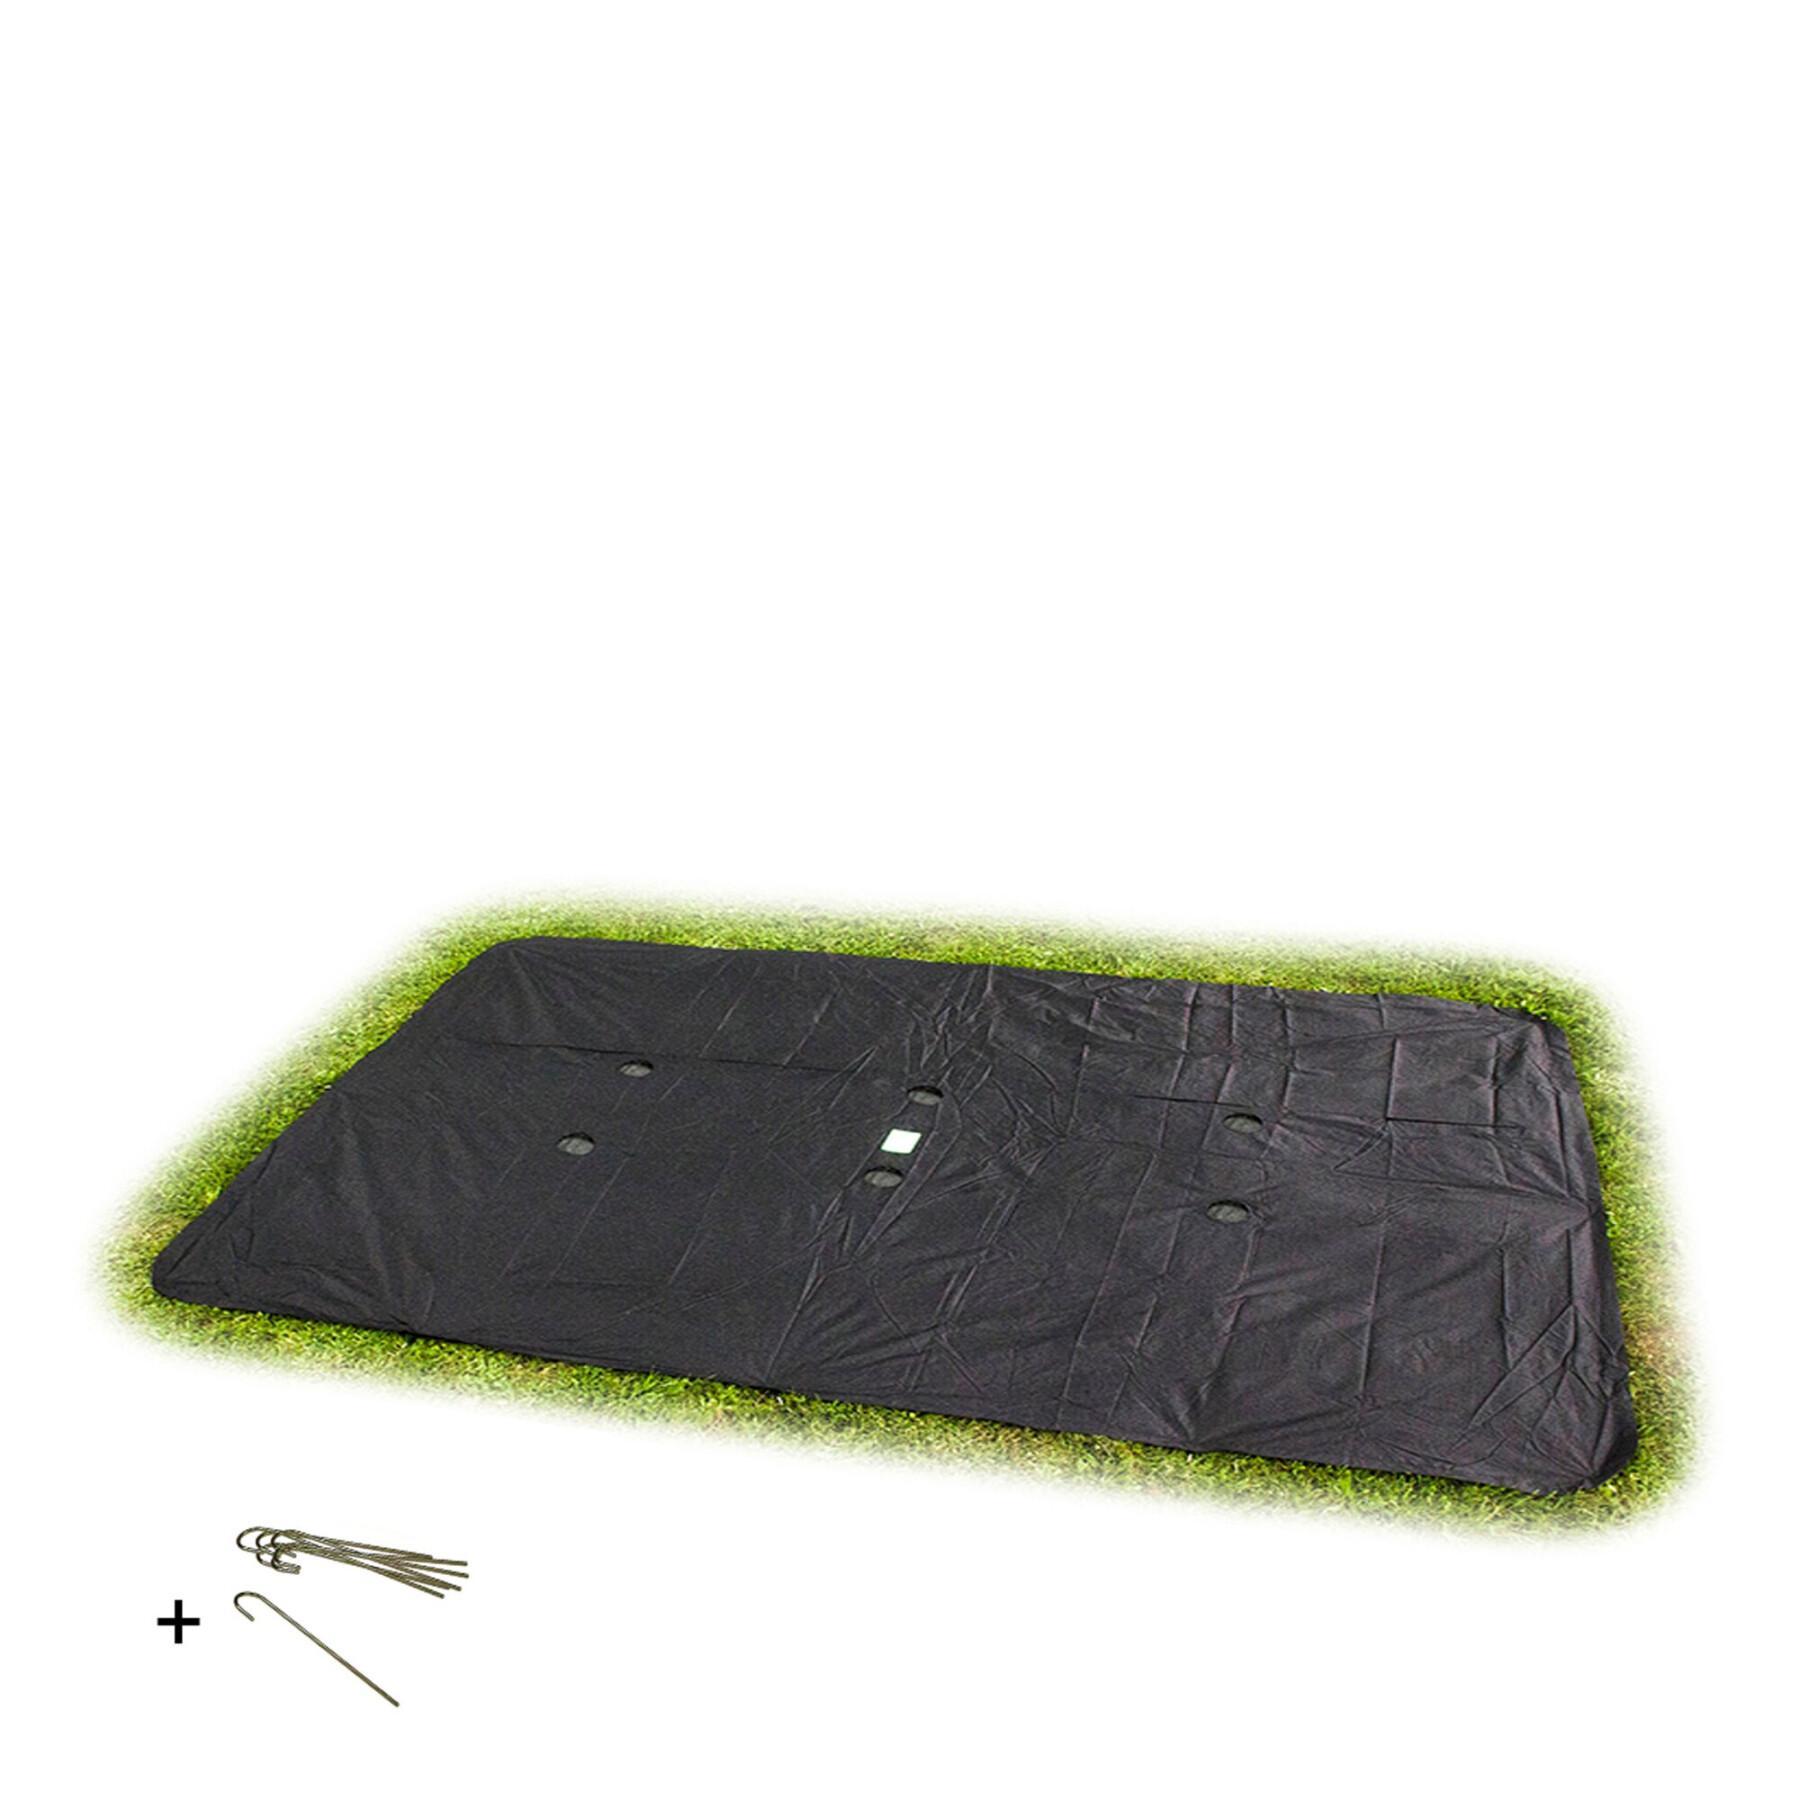 Rechteckige Schutzhülle für eingegrabene Trampoline Bodenniveau Exit Toys 275 x 458 cm